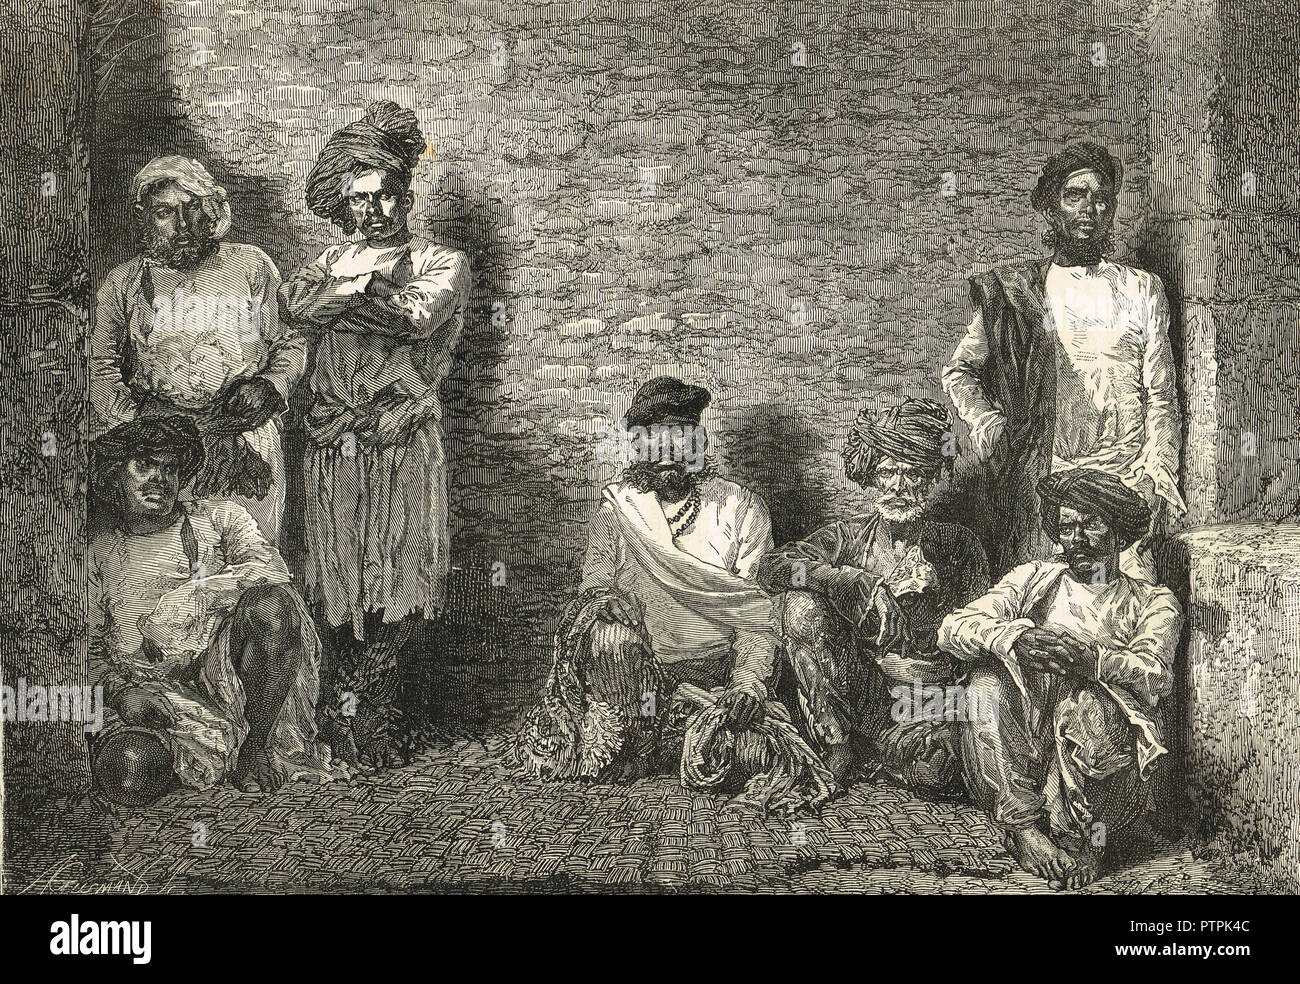 Schläger, Taga, tuggee im Gefängnis, Mumbai, Maharashtra, Indien, um 1830. Eine organisierte Gruppe von professionellen Räuber und Mörder, durch die britischen Herrscher in Indien unterdrückt Stockfoto